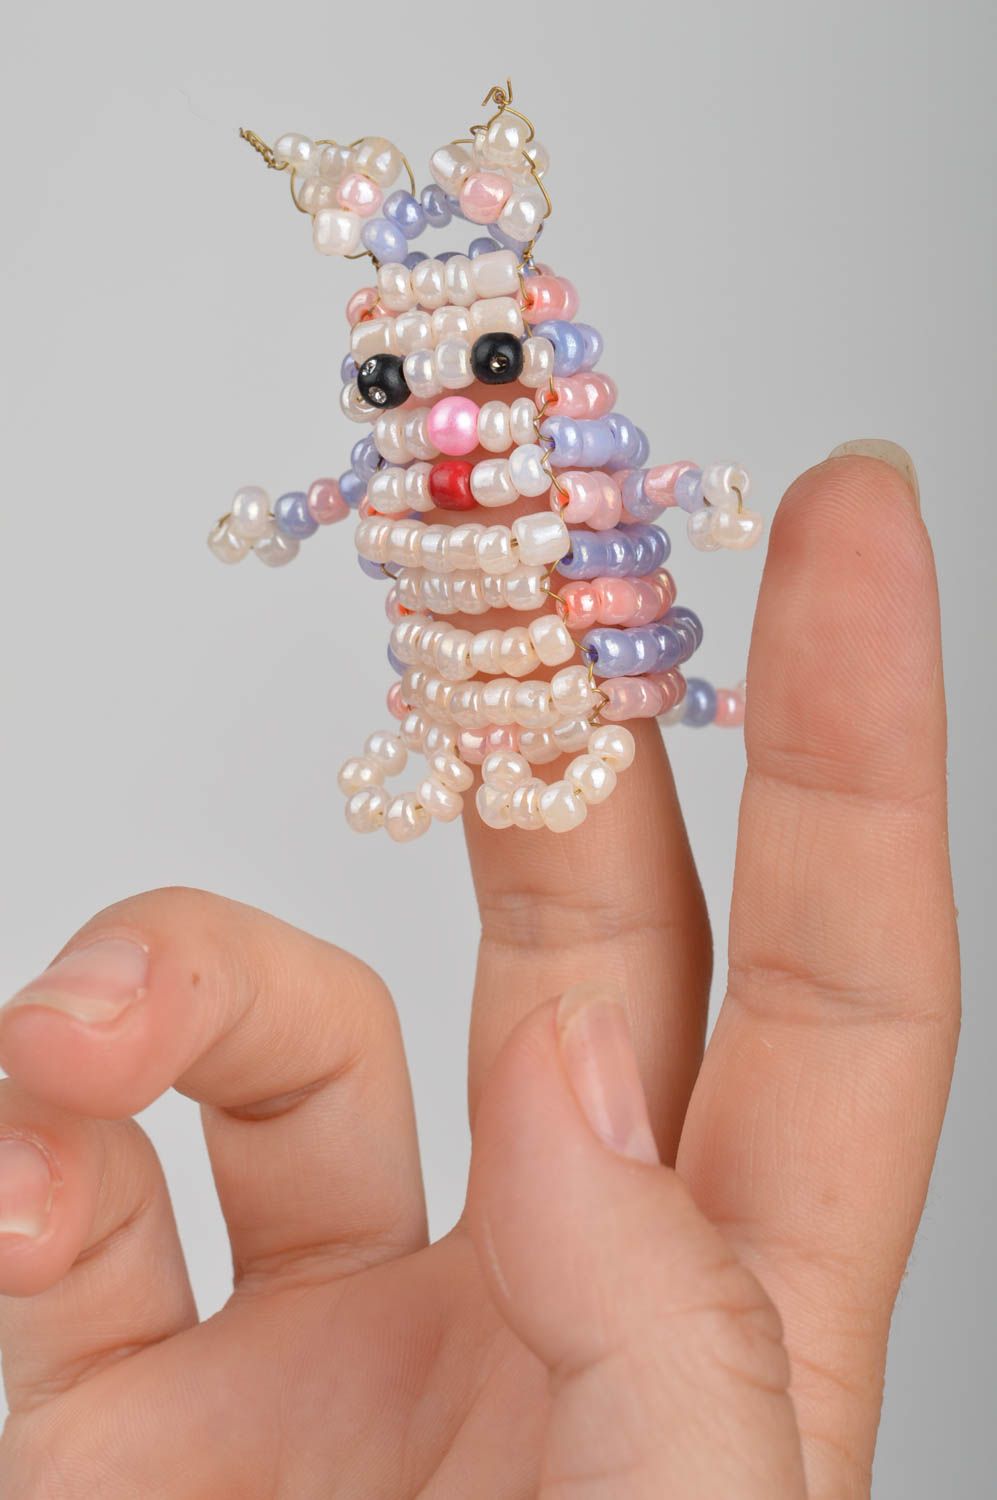 Пальчиковая игрушка котик из бисера для кукольного театра ручной работы фото 1